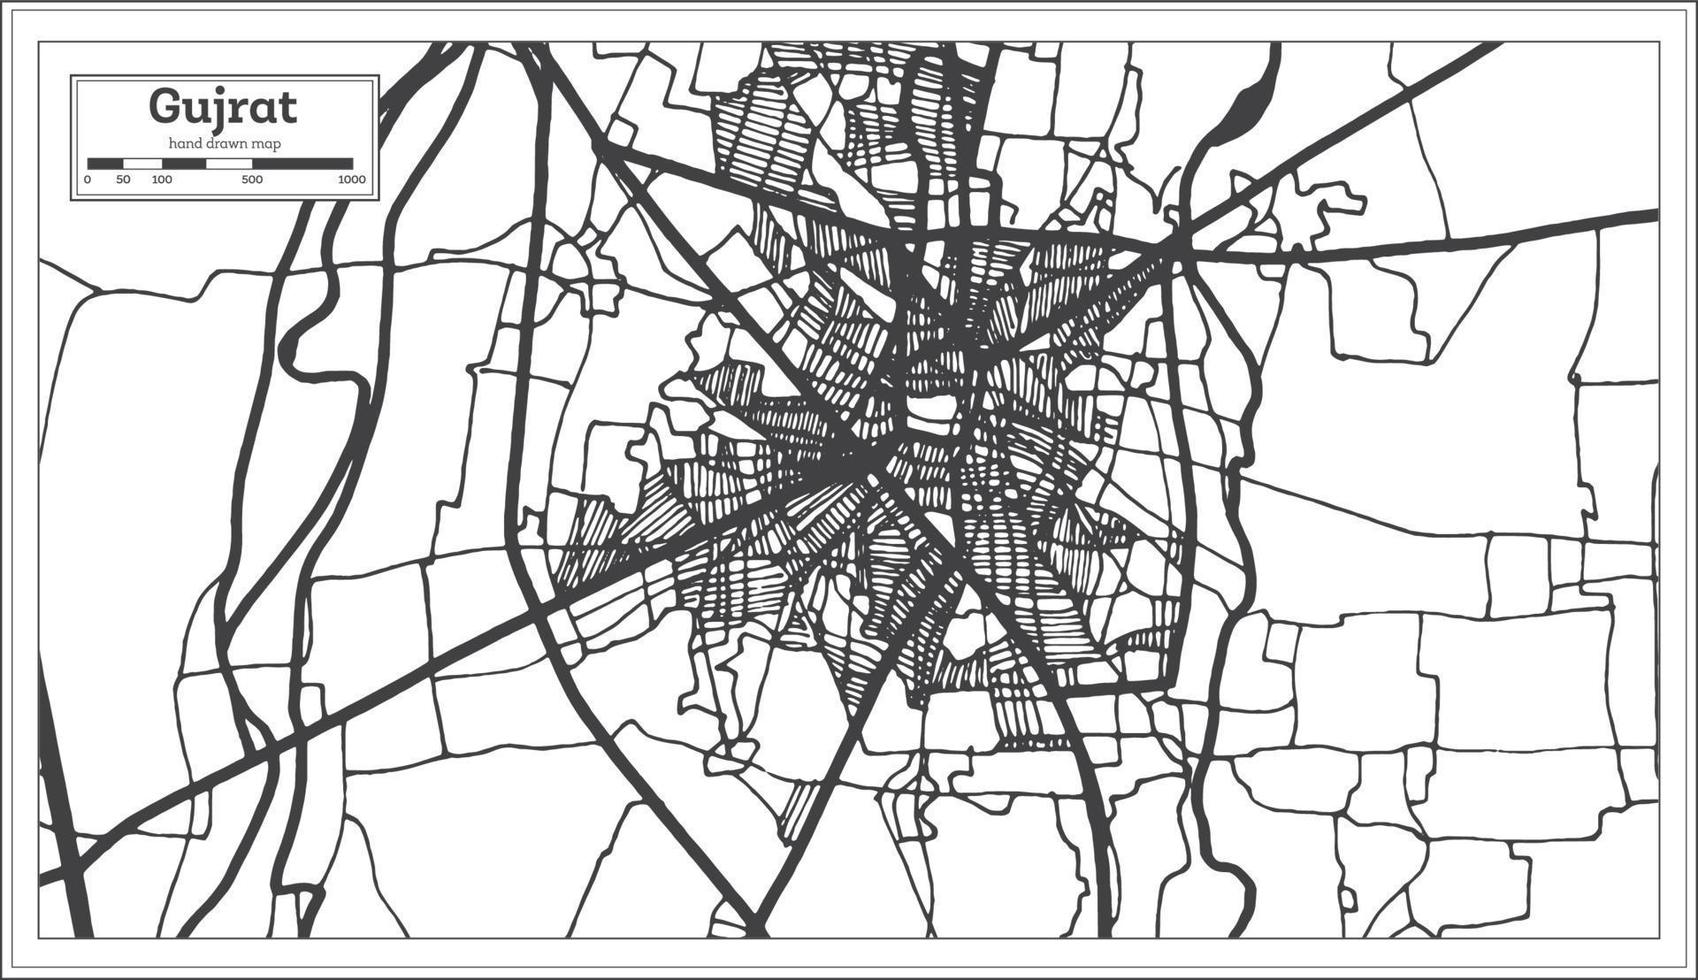 gujrat pakistan stad Karta i retro stil i svart och vit Färg. översikt Karta. vektor